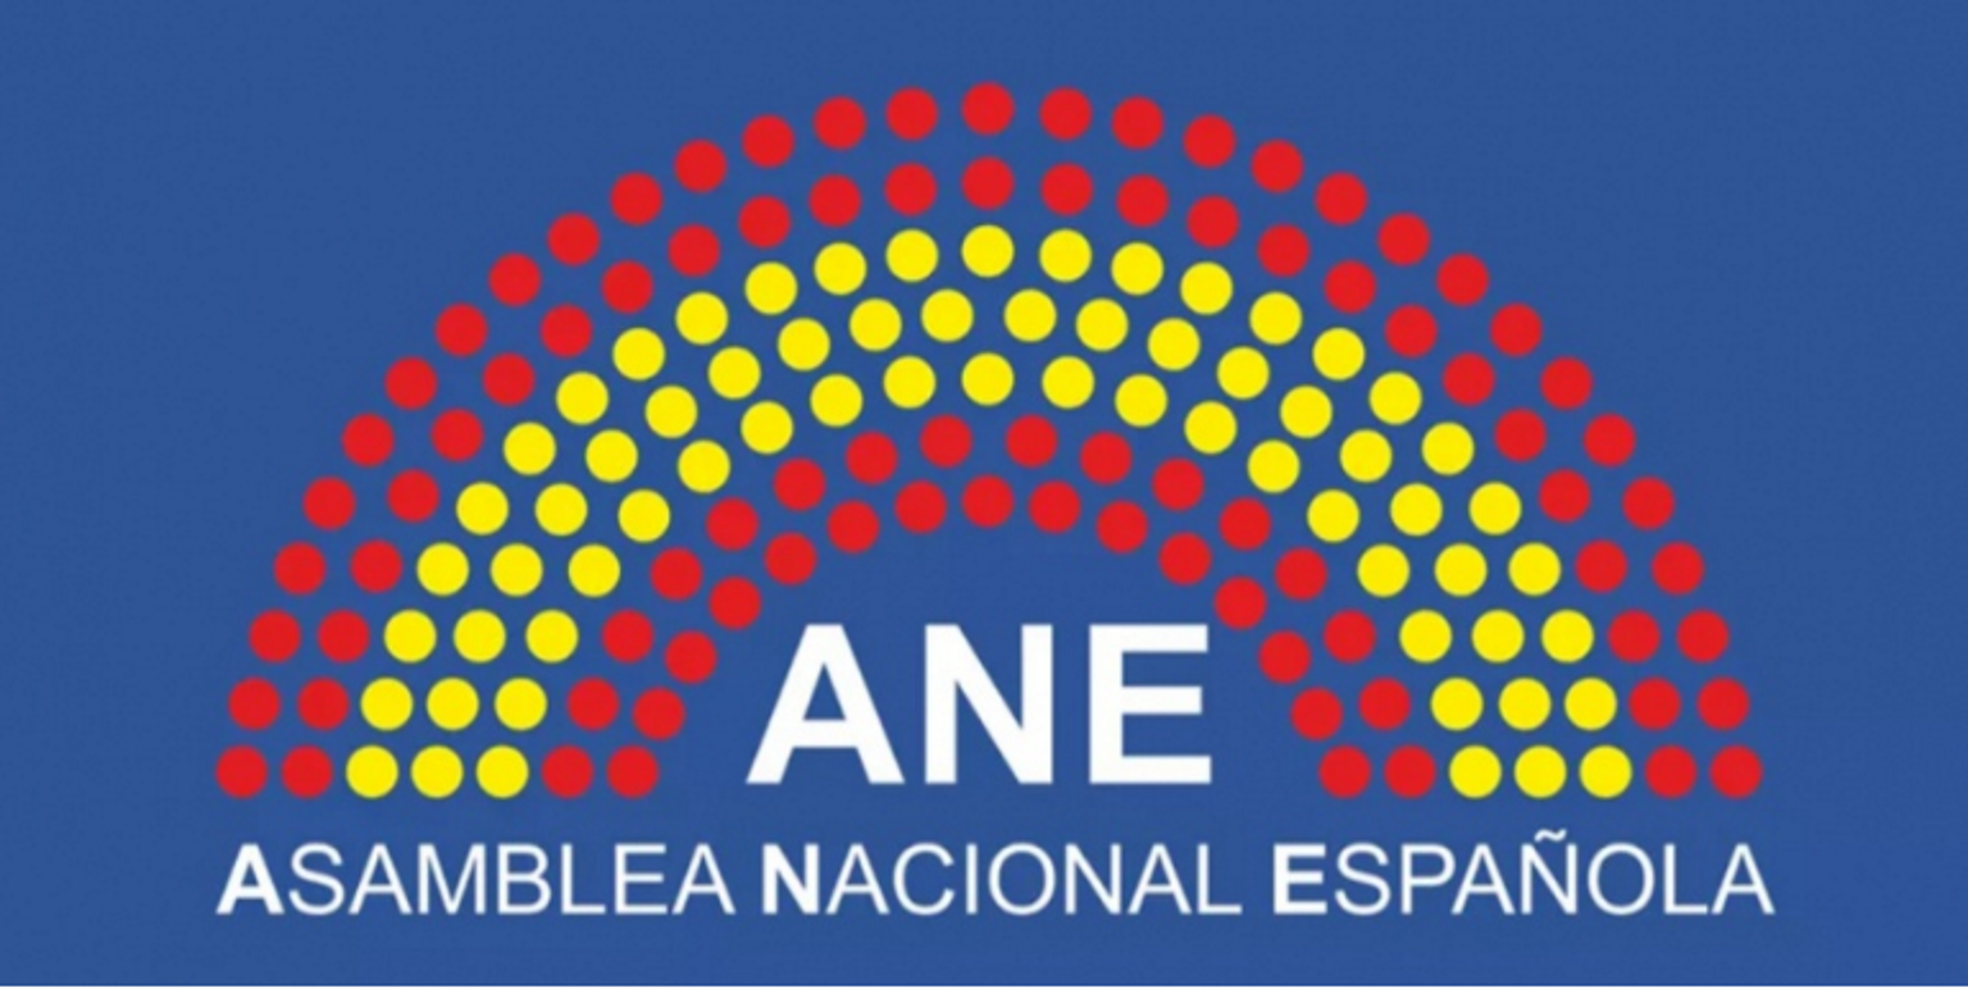 El enésimo intento españolista: Asamblea Nacional Española